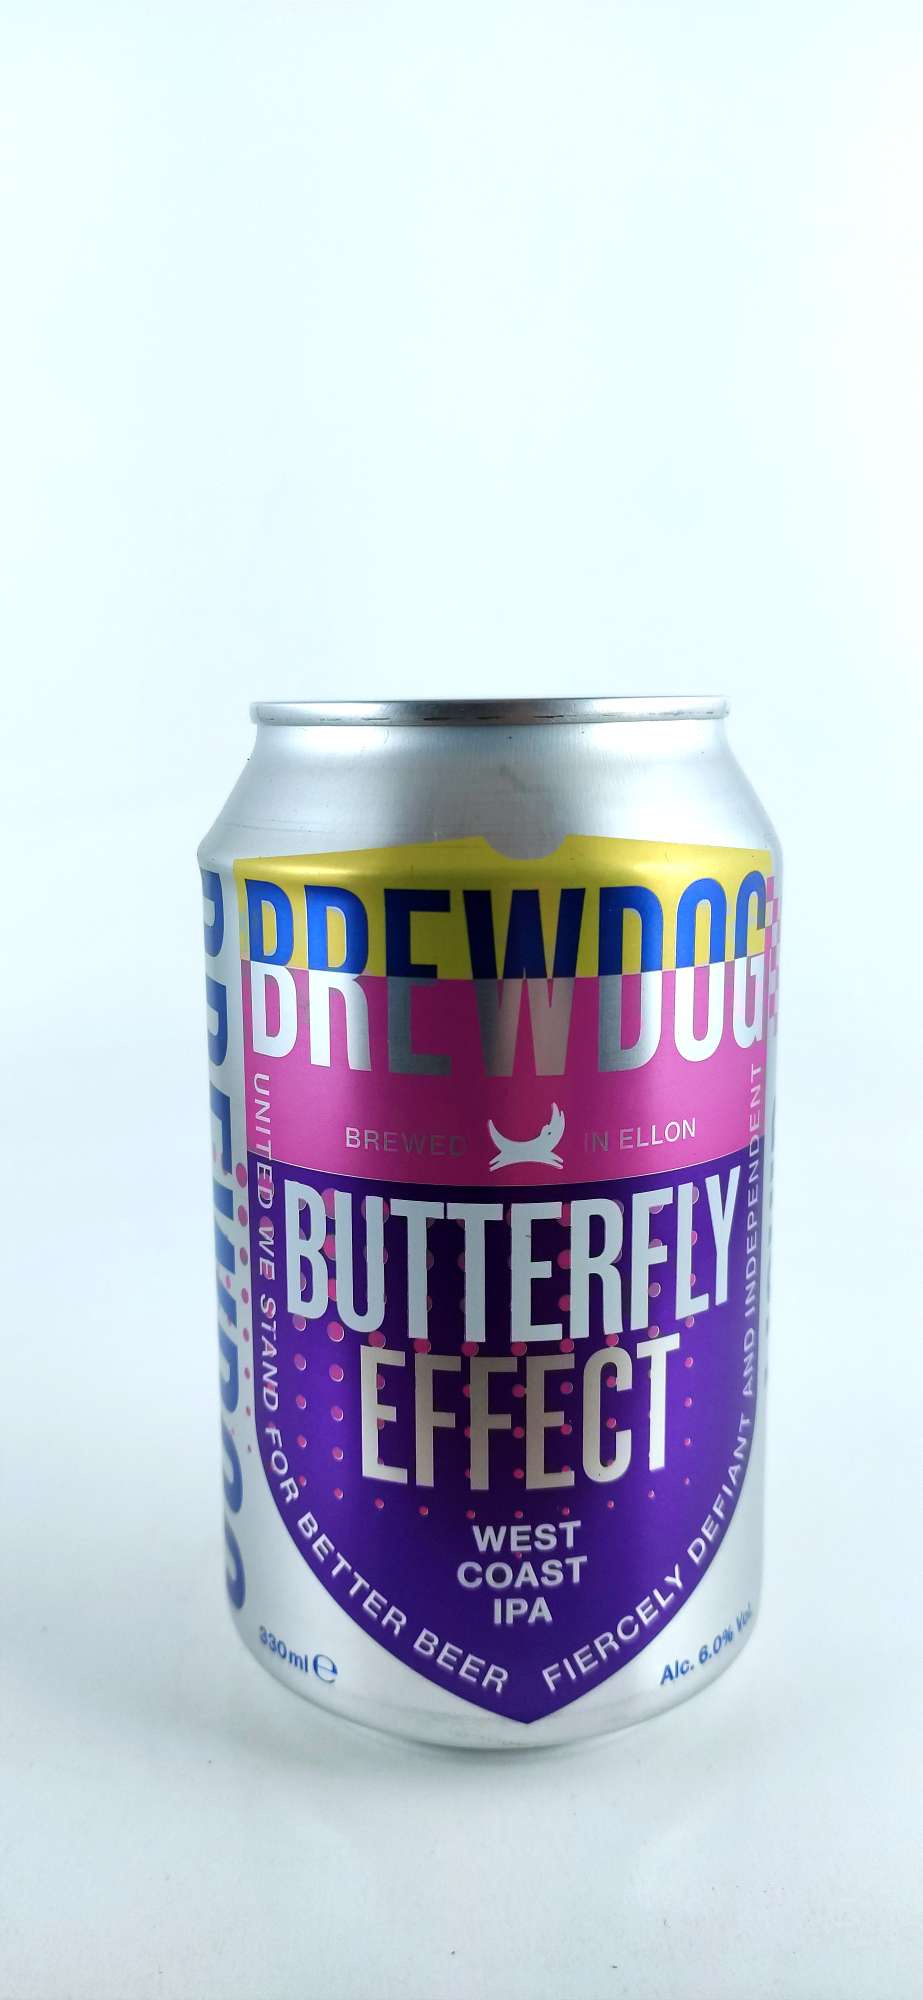 BrewDog Butterfly Effect West Coast IPA 